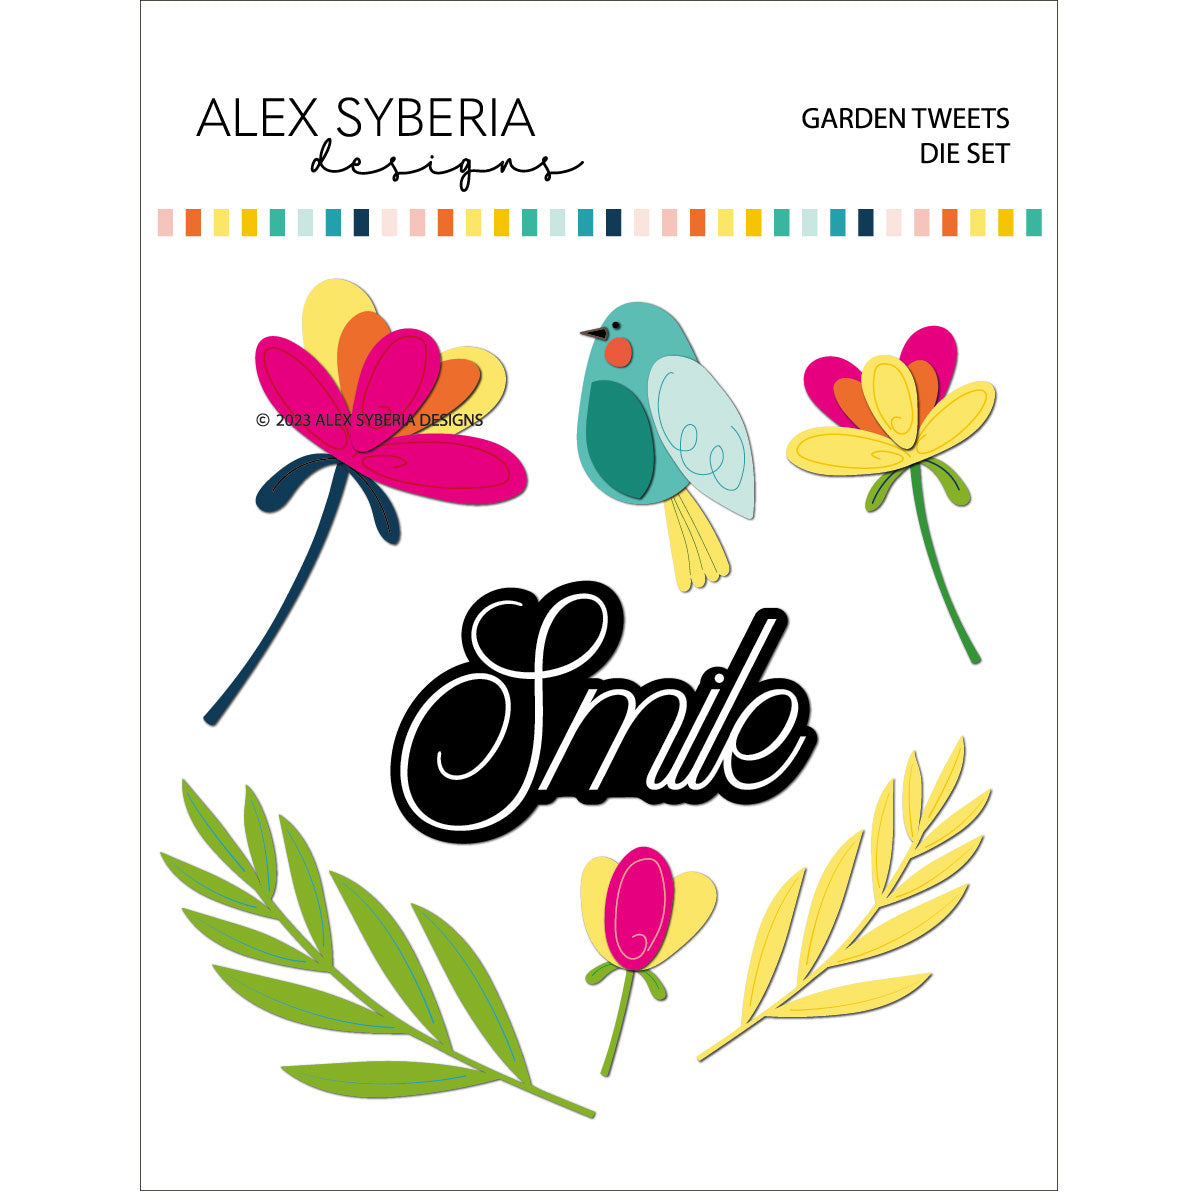 Alex Syberia Designs - Dies set - Garden Tweets